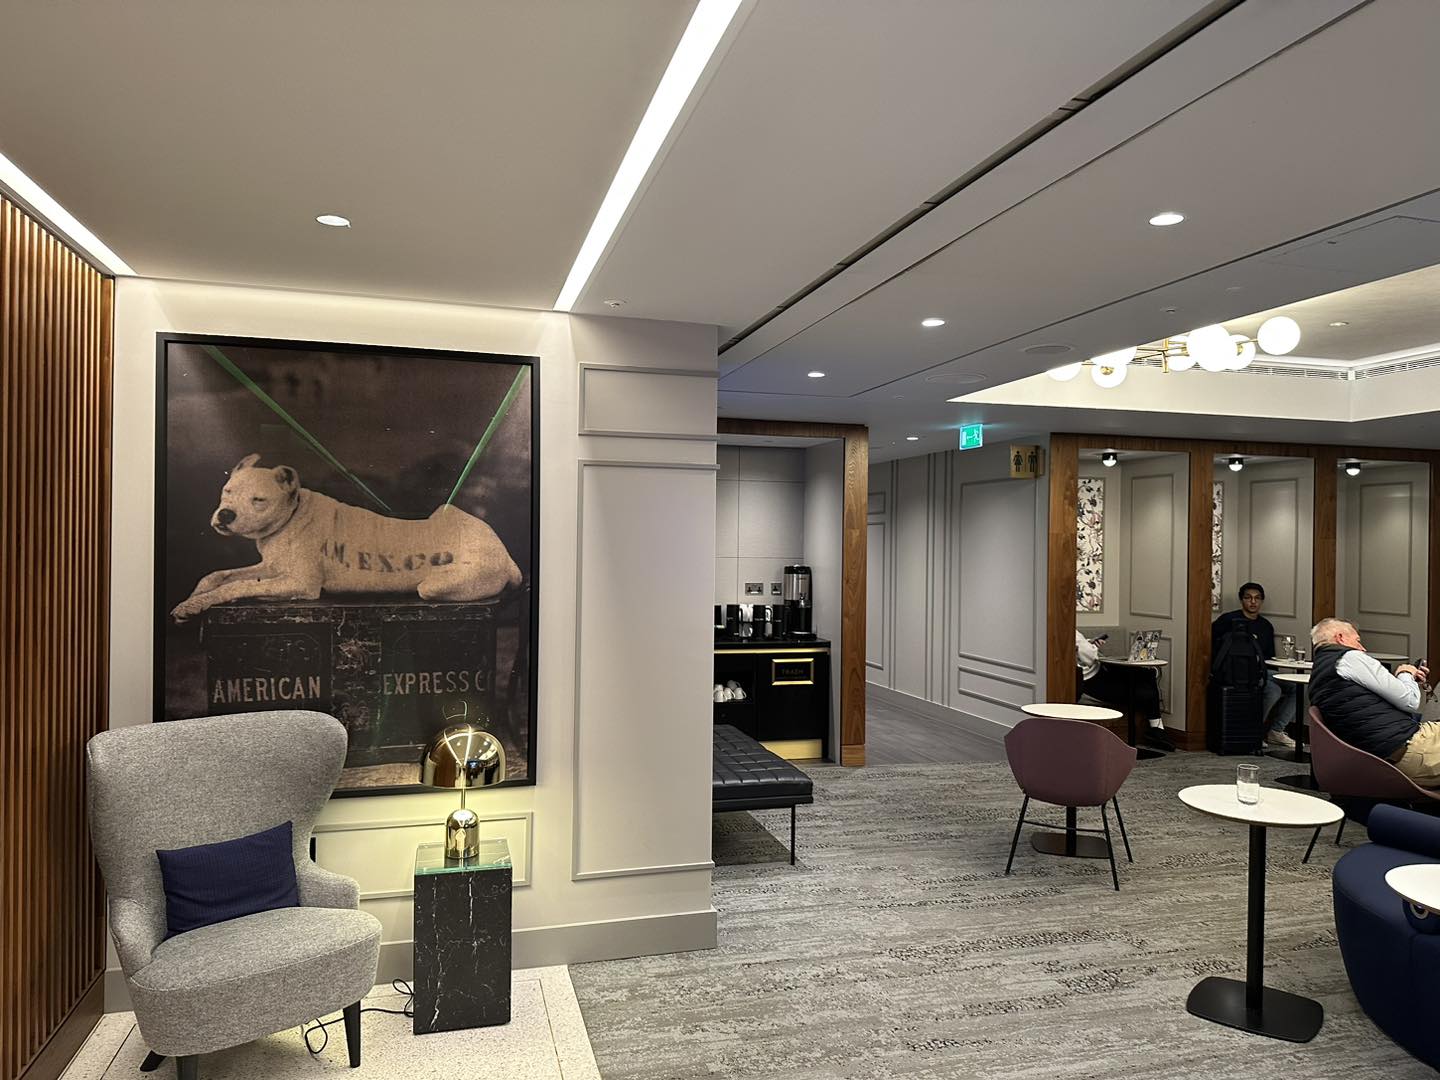 倫敦希斯路機場 Amex Centurion Lounge︱英國機場Lounge 用AE白金卡就可以輕鬆帶多兩個人入～